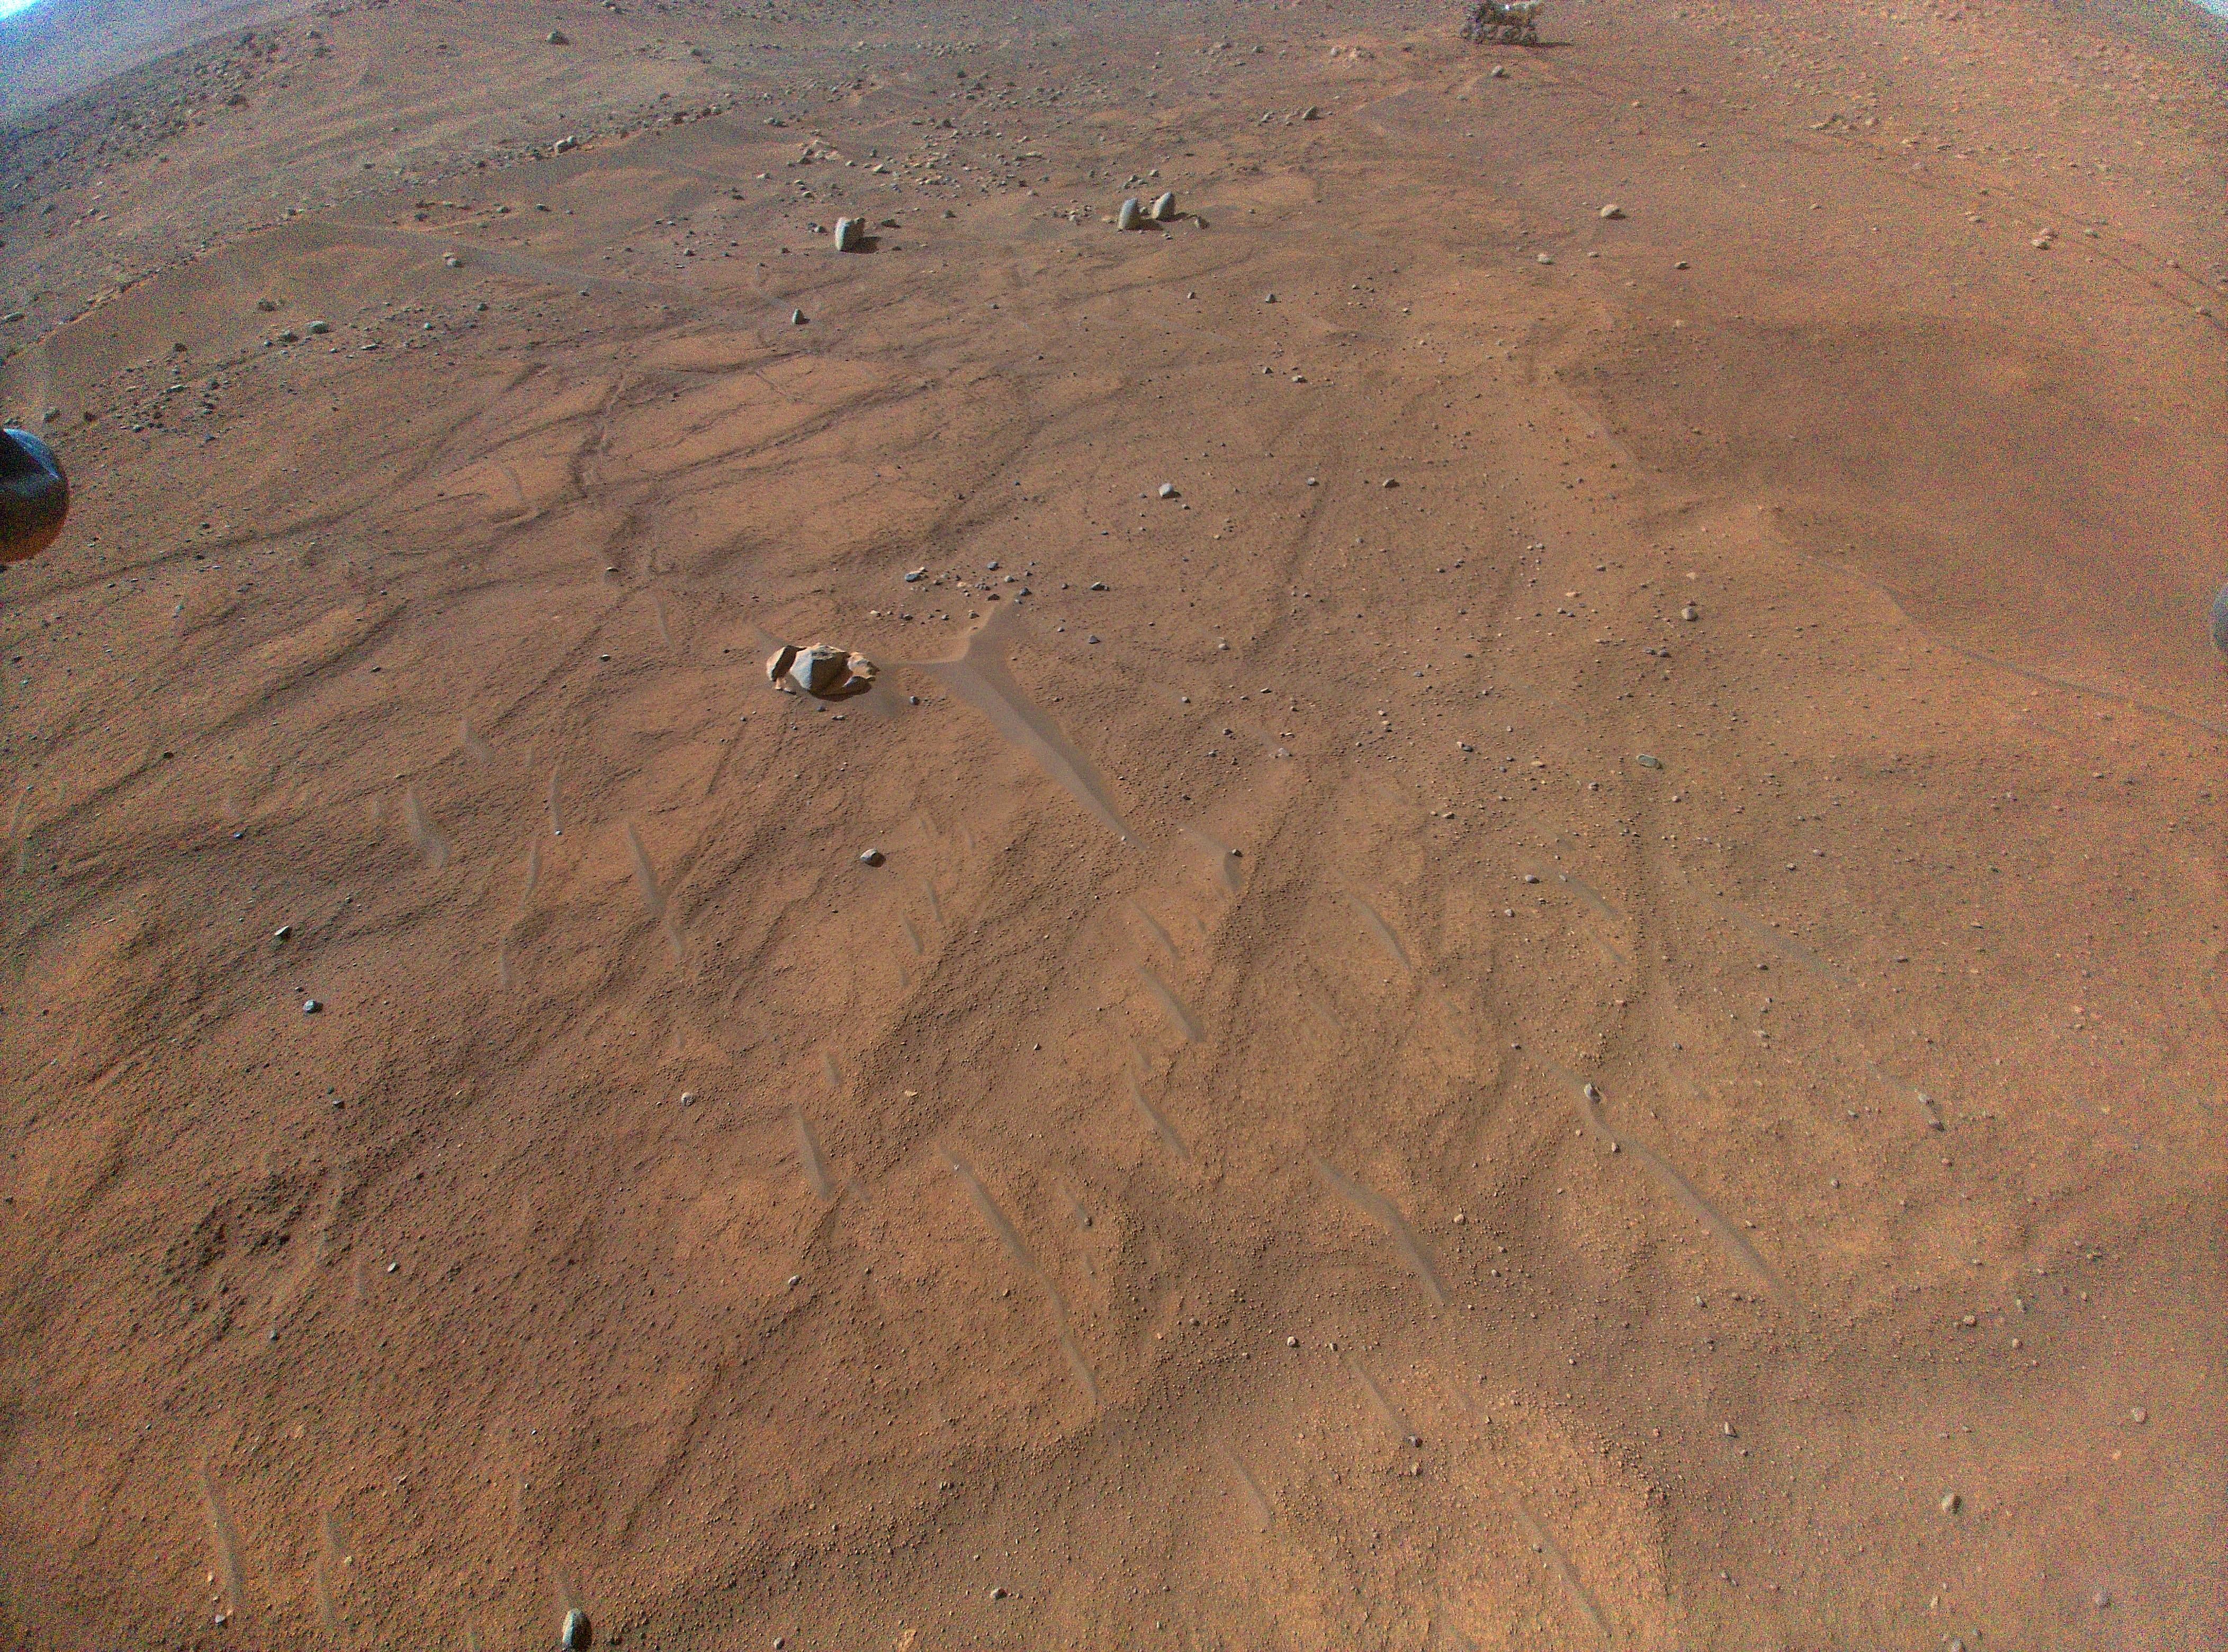 Марсоход Perseverance можно увидеть в верхней части этого снимка, сделанного вертолетом Ingenuity 54 во время его 54-го полета.